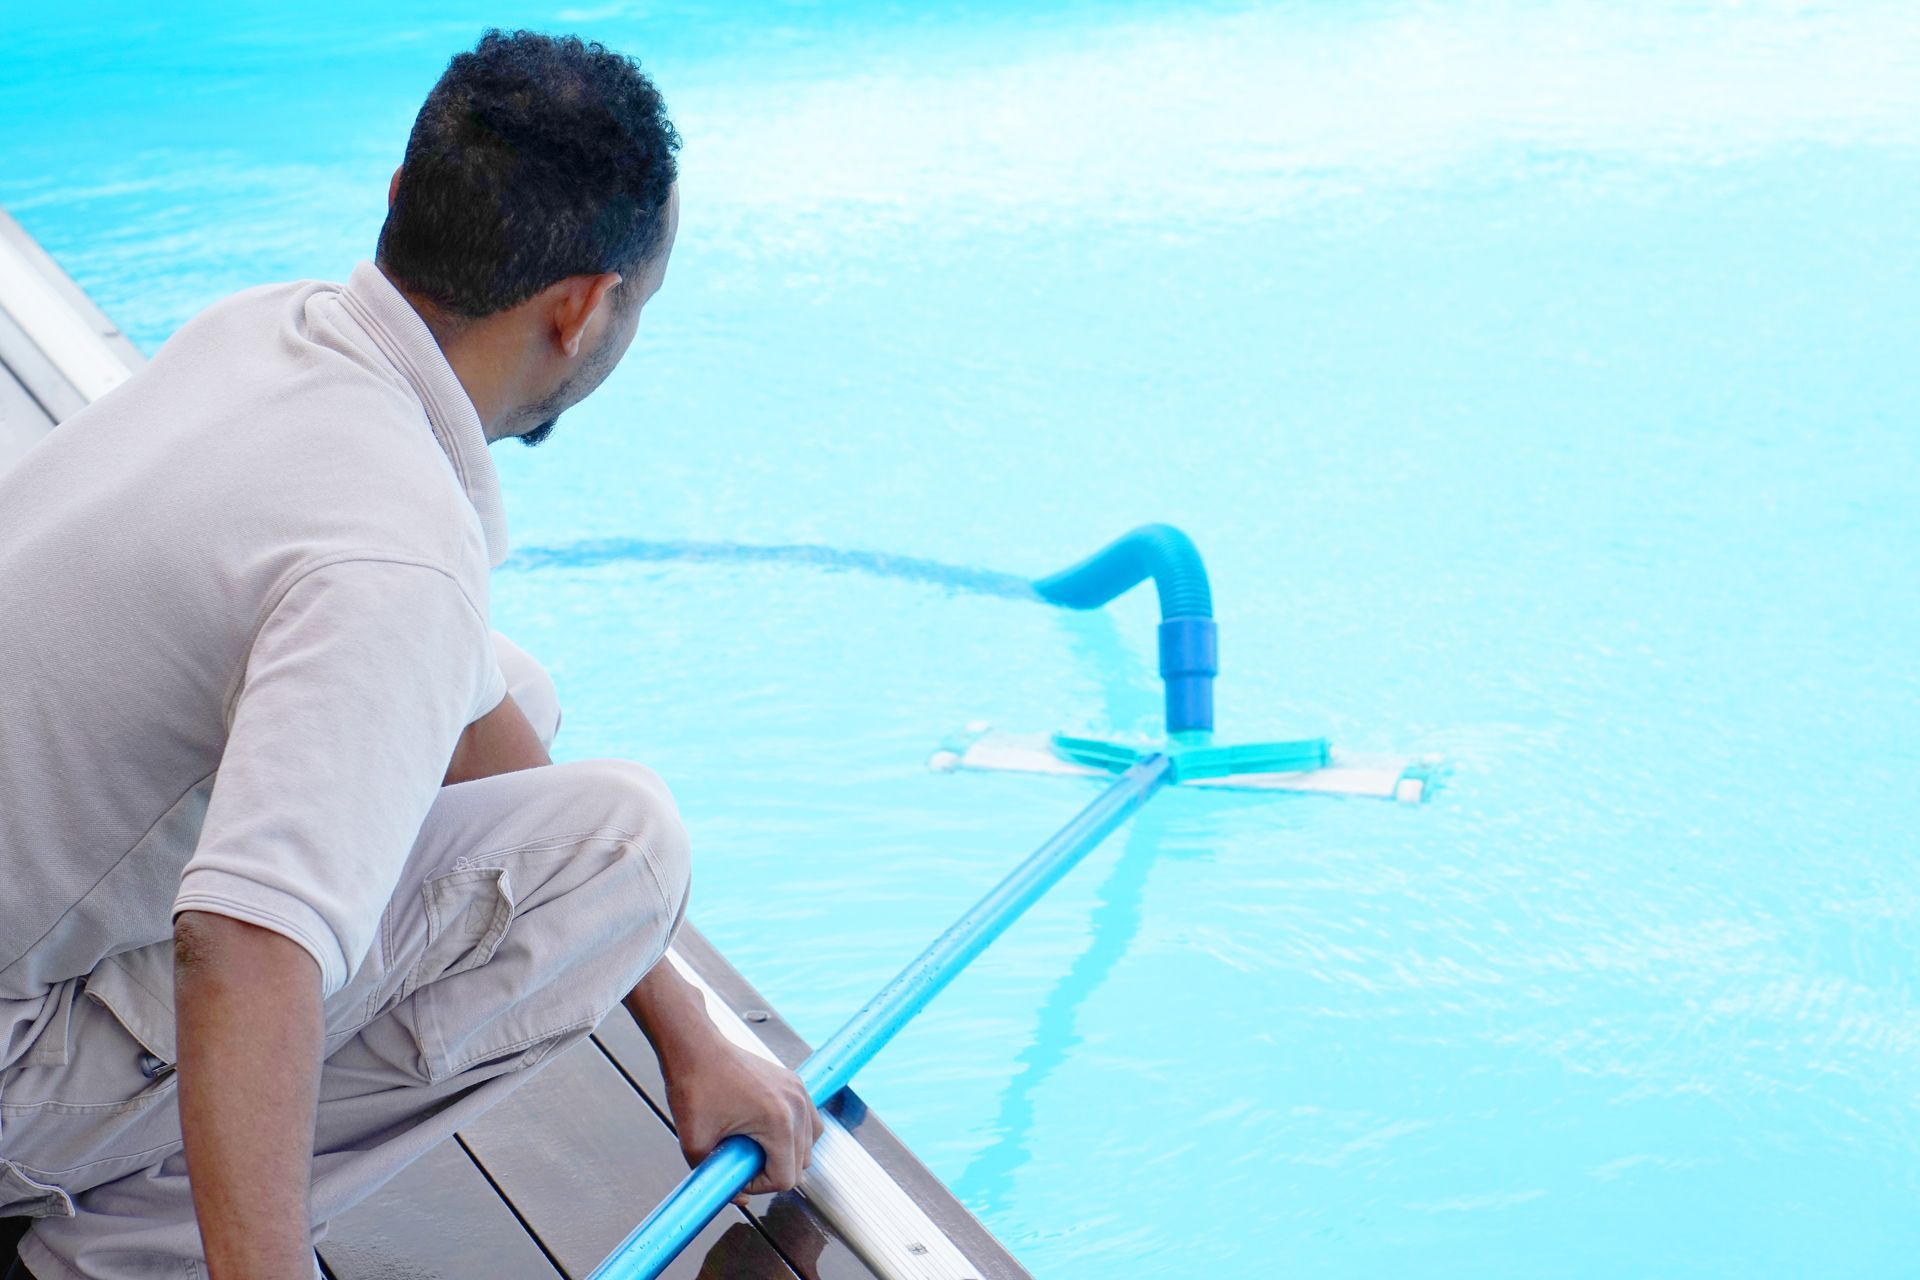 a man using a pool vacuum.